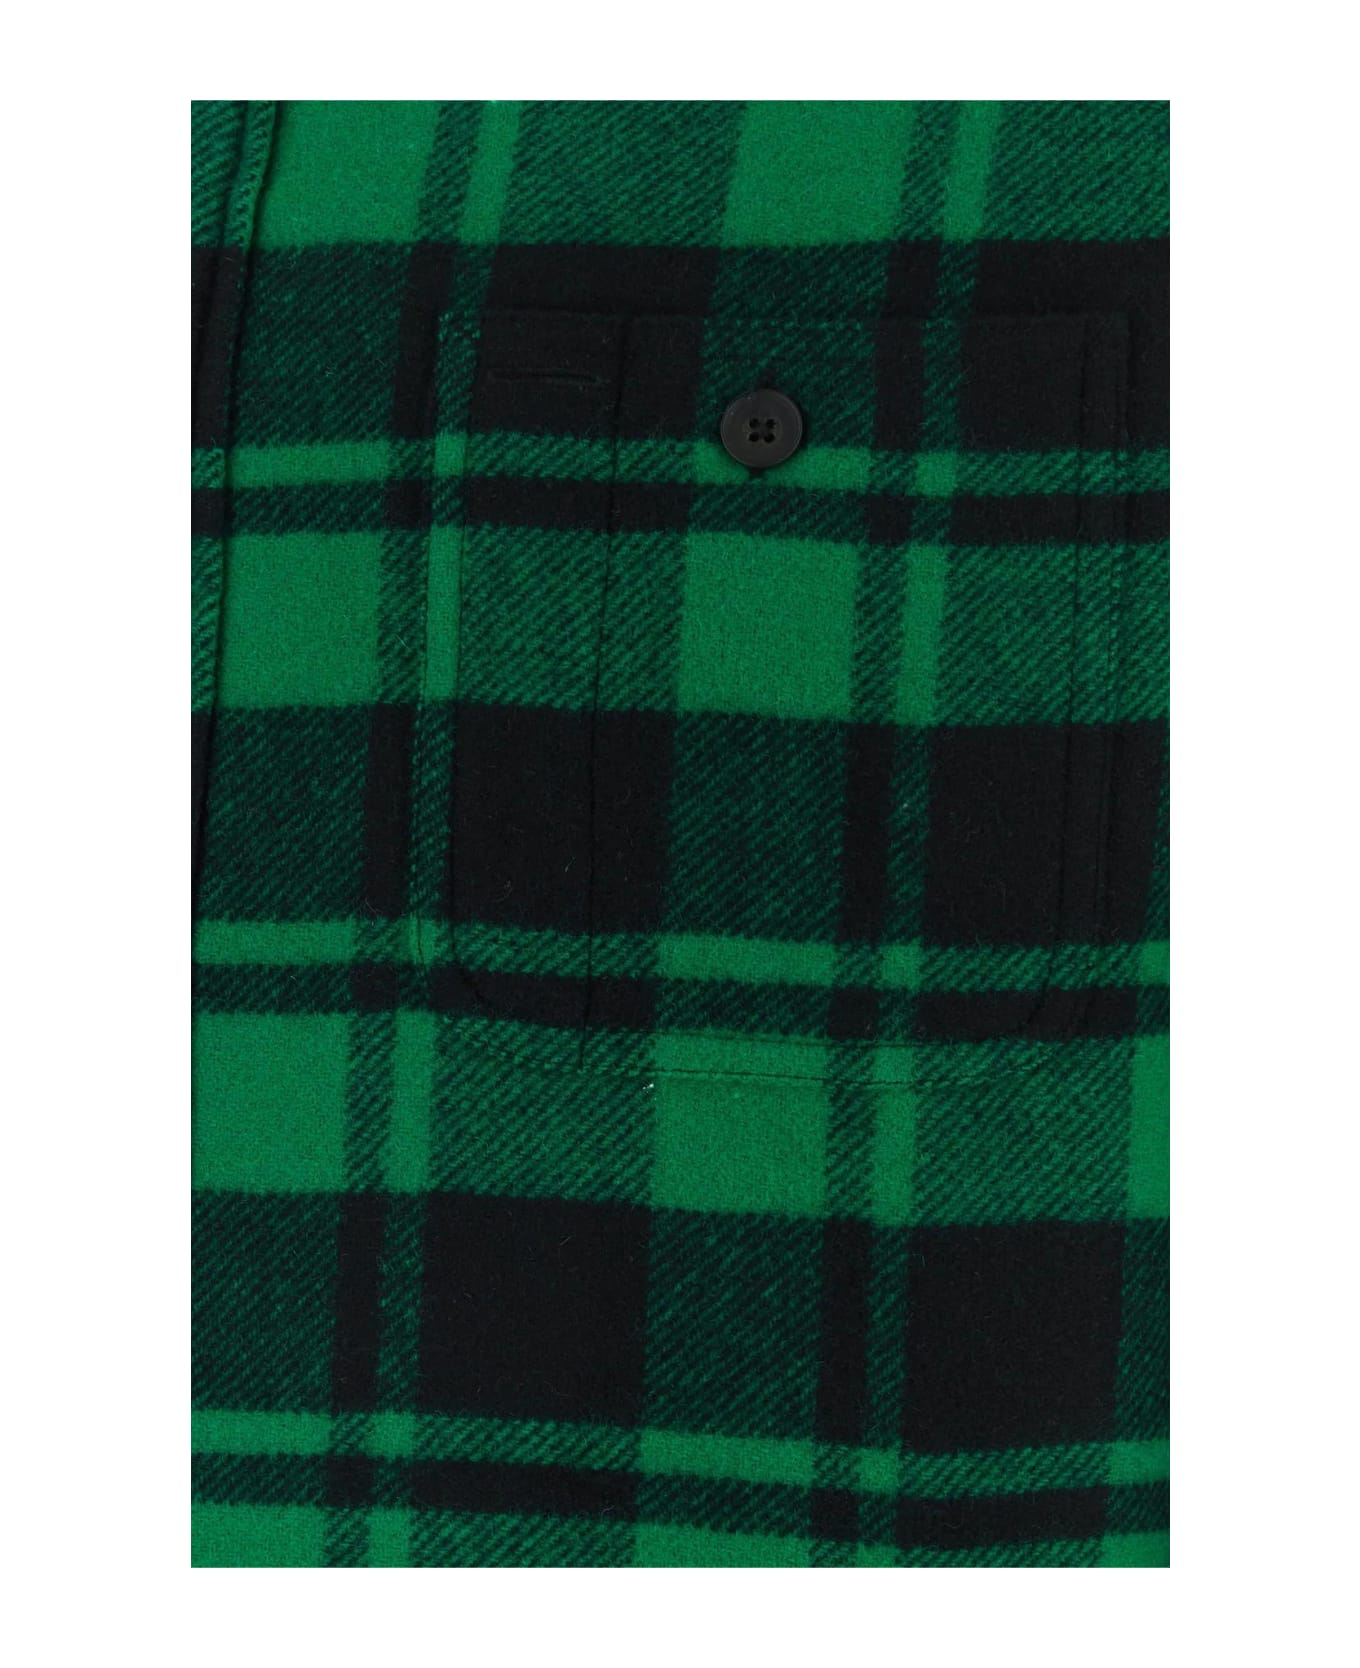 Ralph Lauren Printed Wool Blend Shirt - GREEN/BLACK